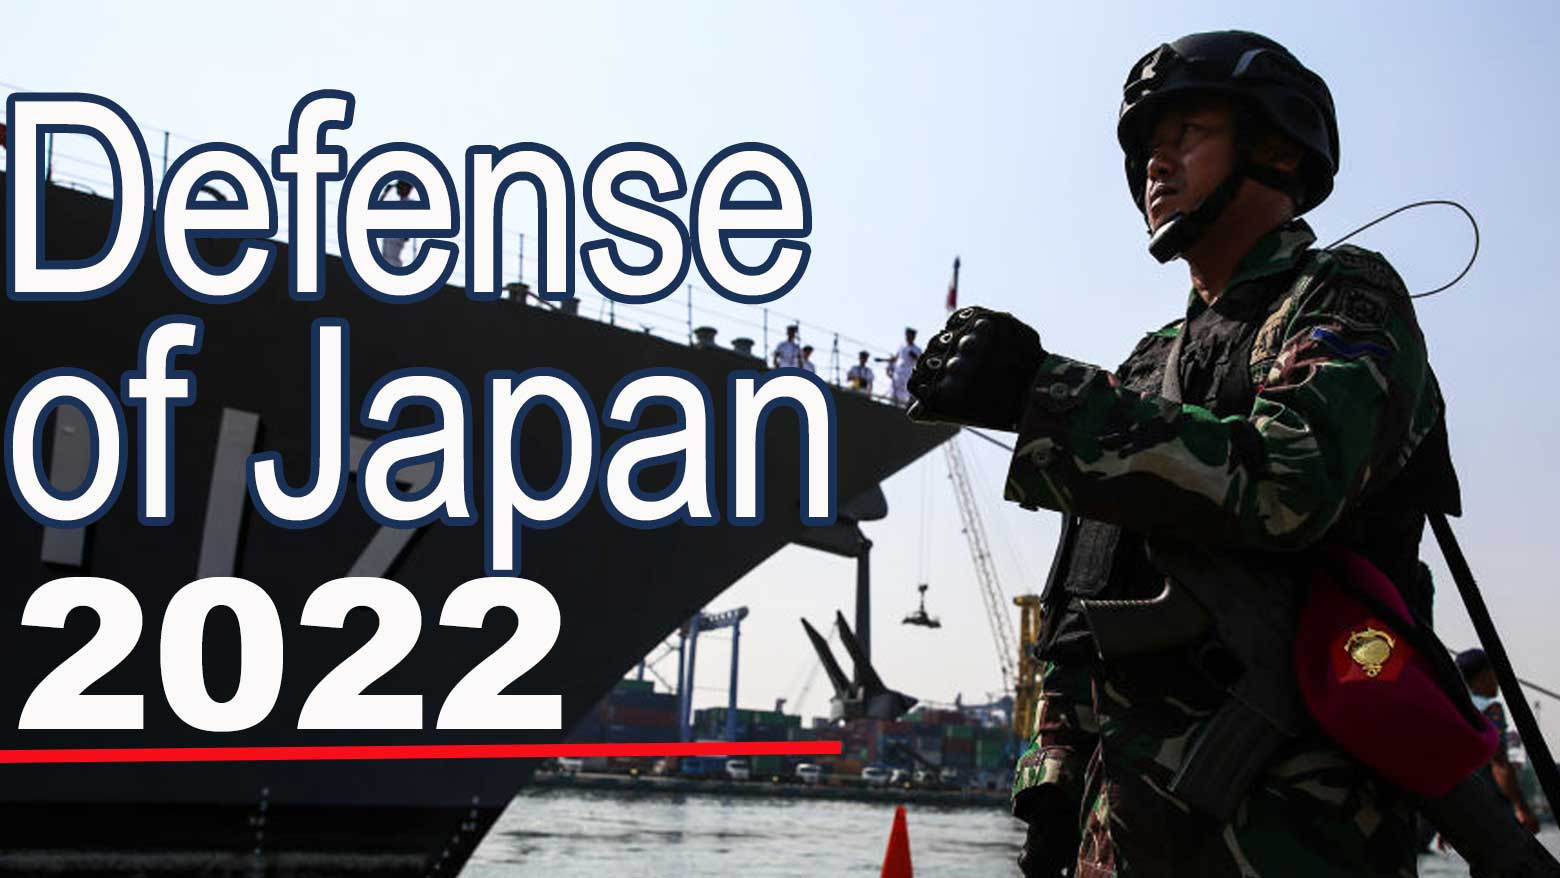 گزارش دفاعی سالانه ژاپن بر روسیه، چین و تایوان تمرکز دارد